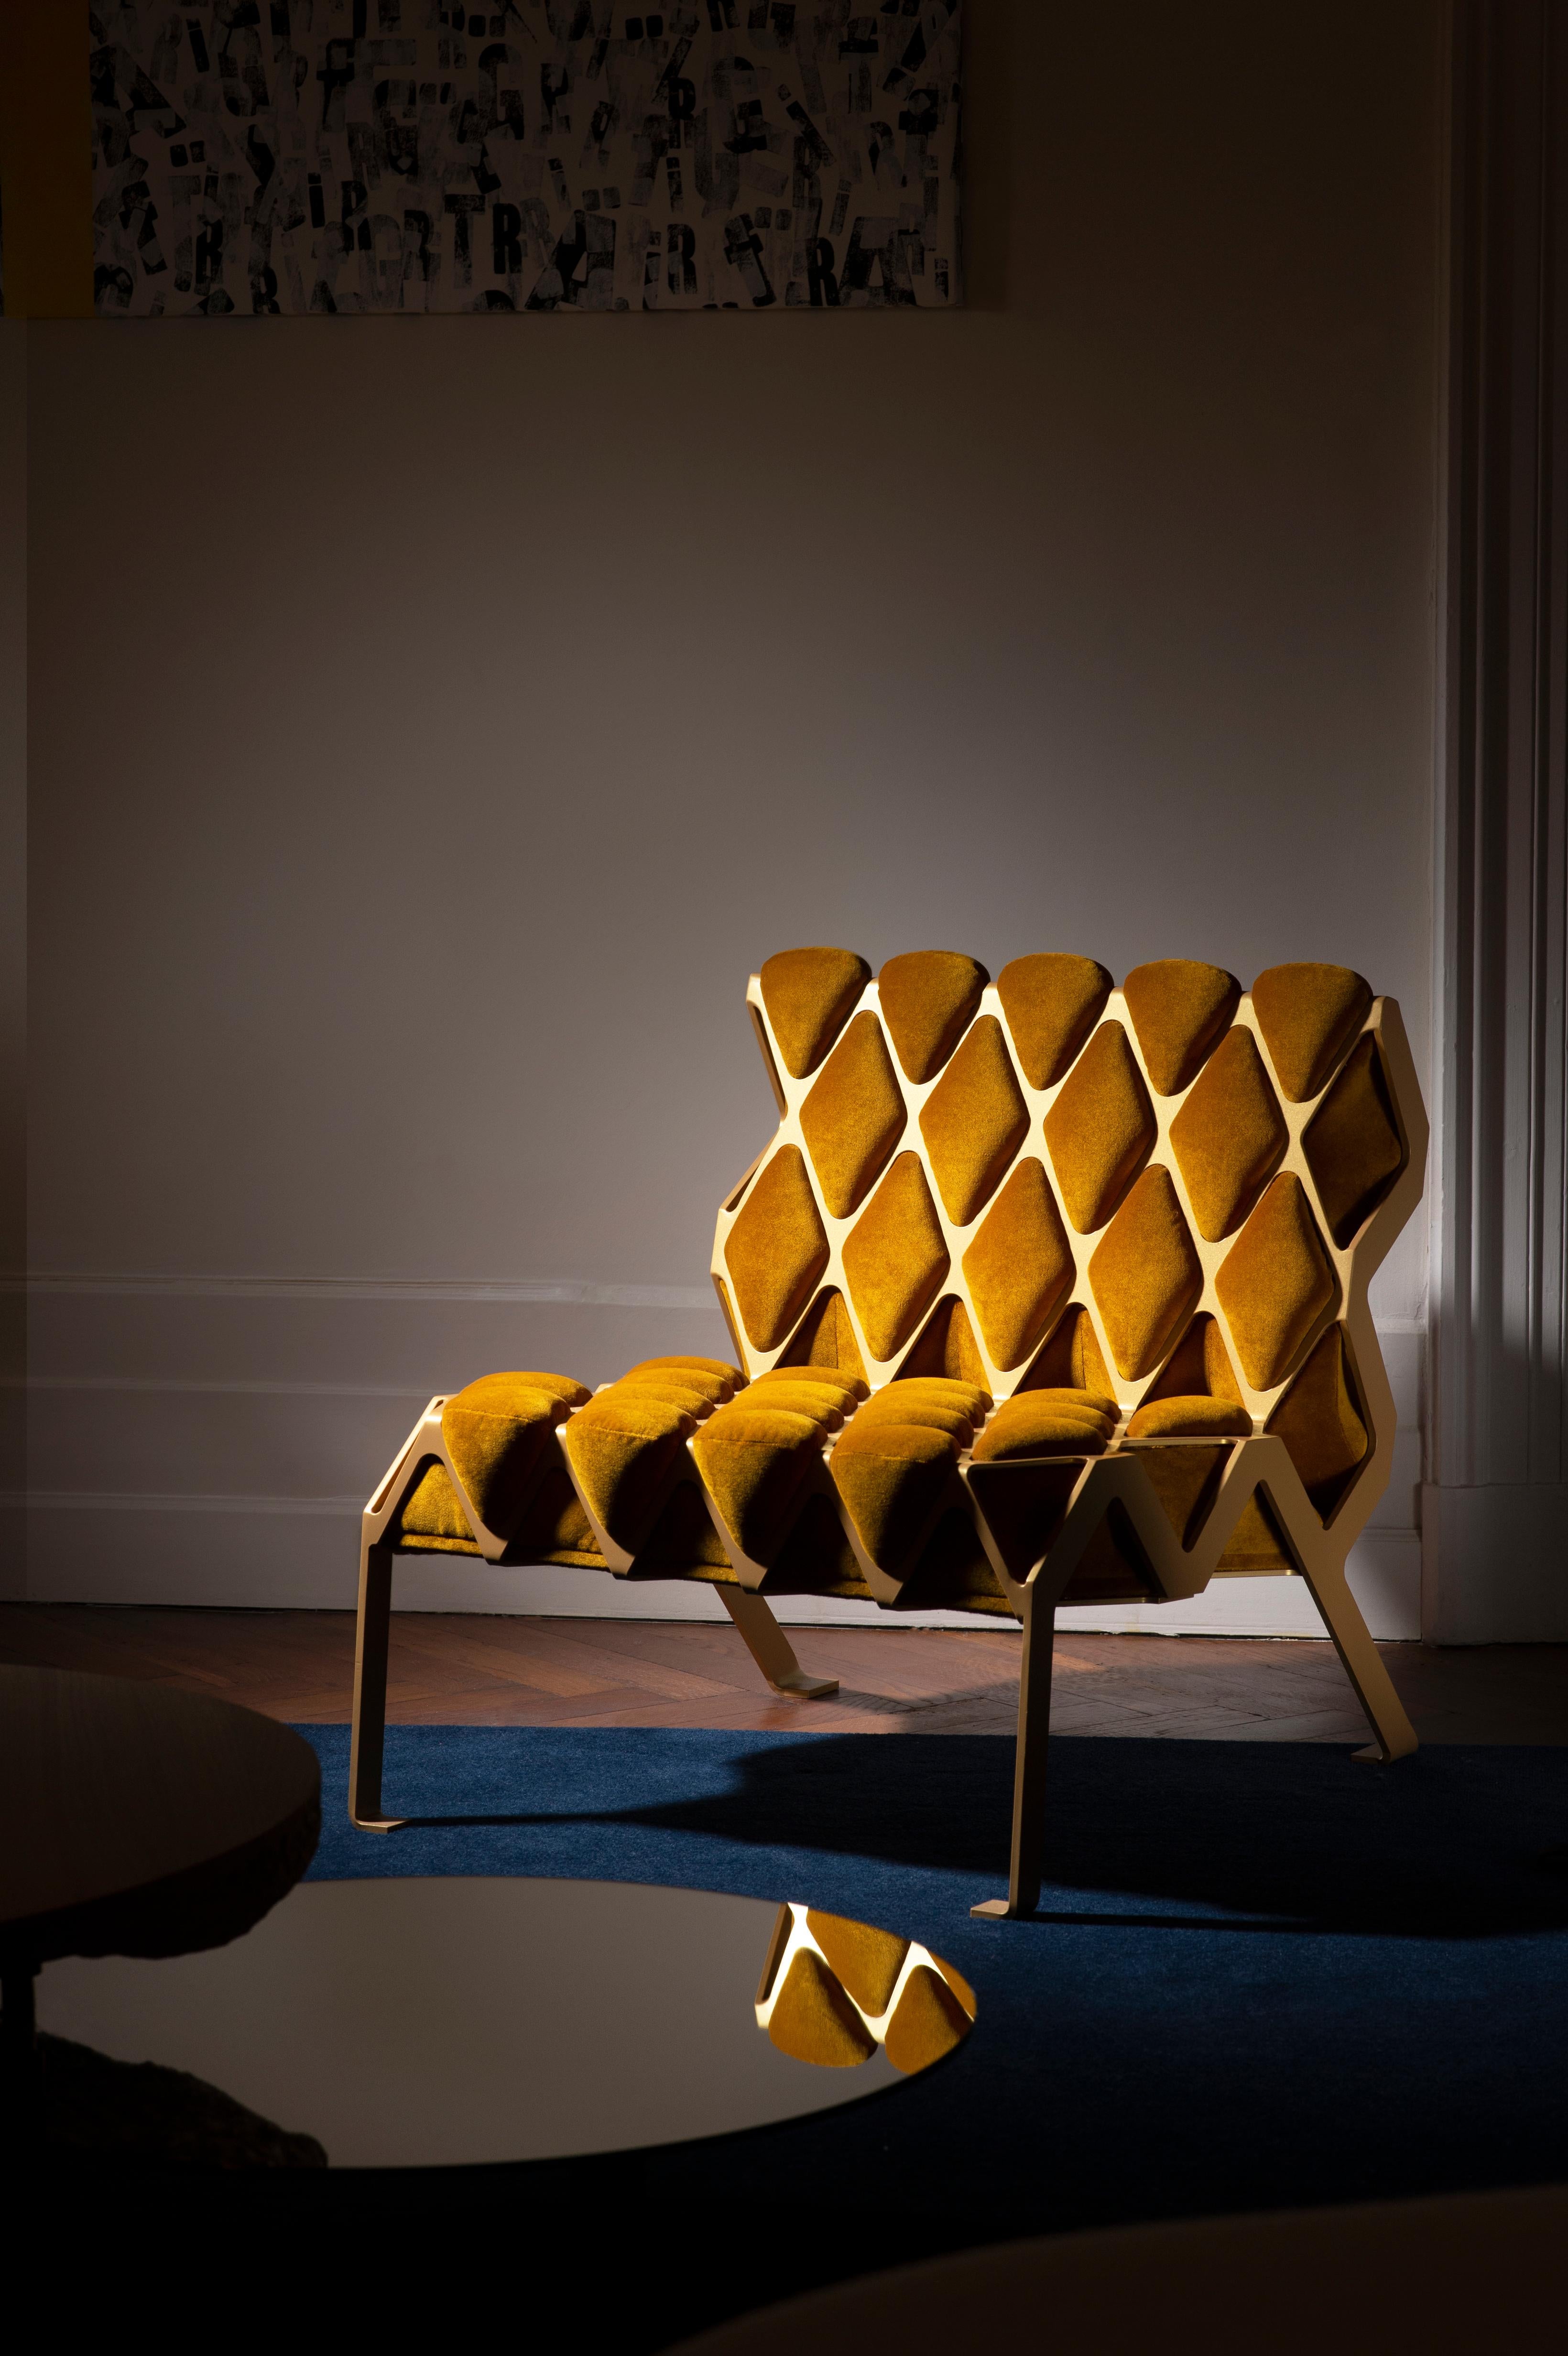 La chaise Matrice est une chaise d'appoint conçue autour de l'empreinte. L'empreinte créée par l'interaction entre deux matériaux, un ductile et un mou. Inspiration des photographies de chaises imprimées de Gabriele Basilico

La chaise d'appoint